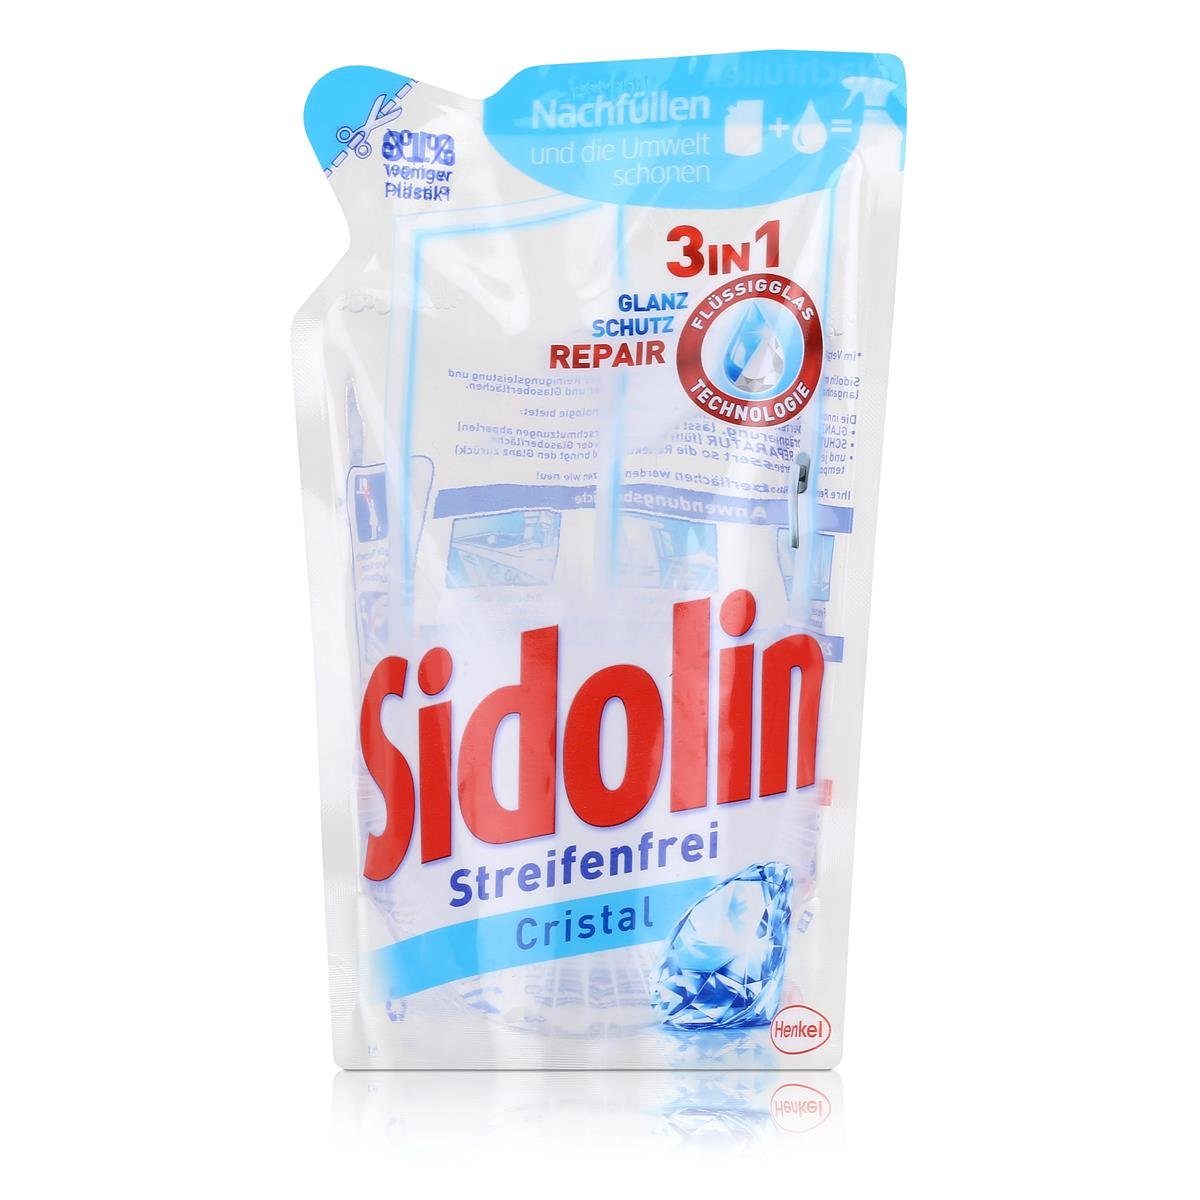 SIDOLIN Sidolin Streifenfrei Cristal Nachfüller 250ml - Glasreiniger (1er Pack Glasreiniger